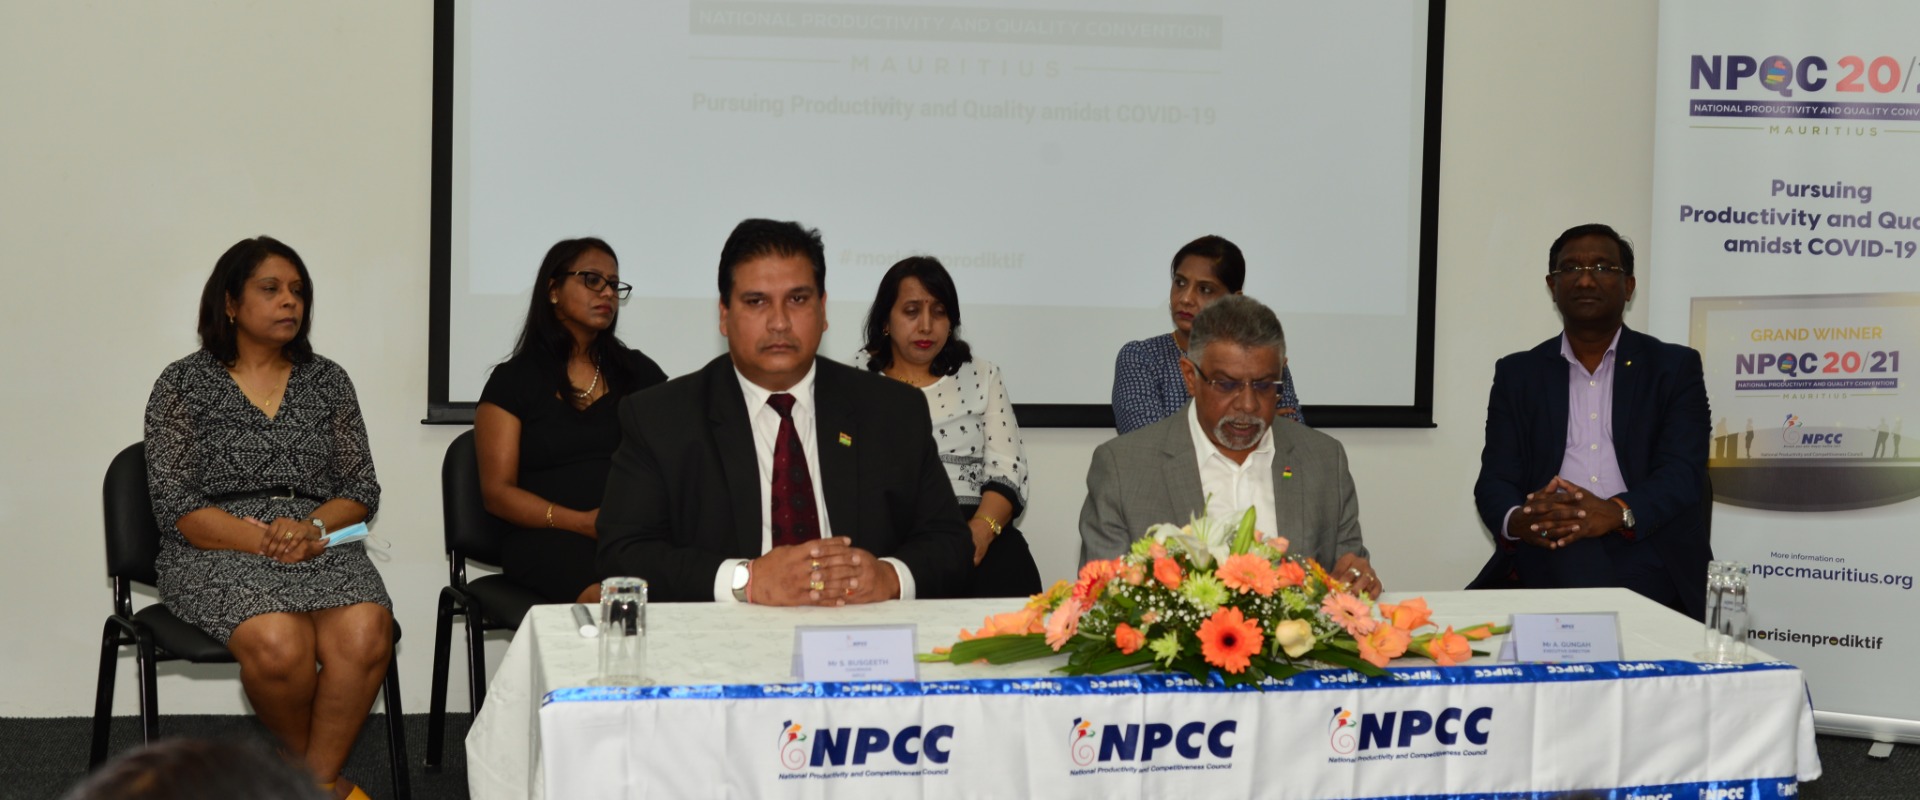 Le NPCC lance la troisième édition de la National Productivity and Quality Convention